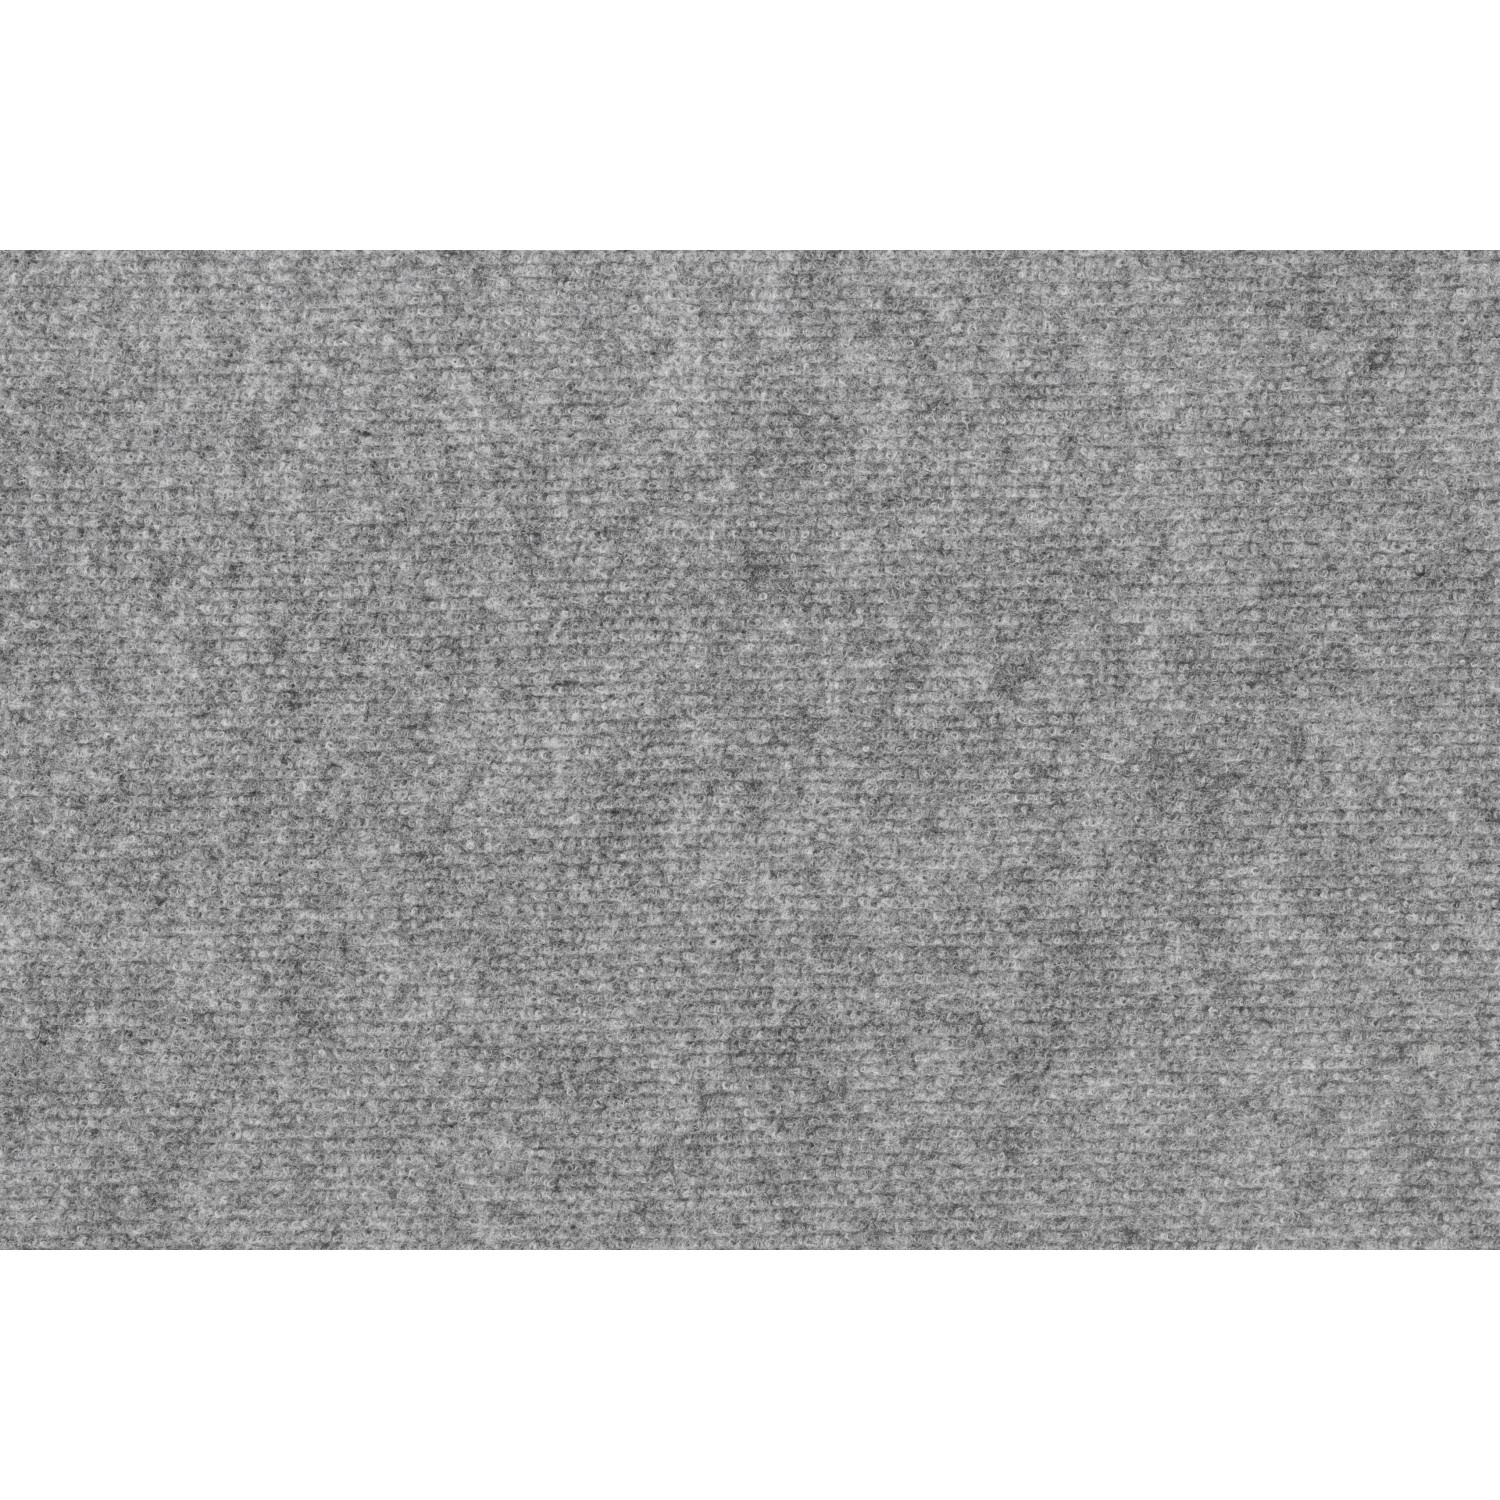 Teppichboden Malta Nadelfilz Grau Meterware / Breite 4 m kaufen bei OBI